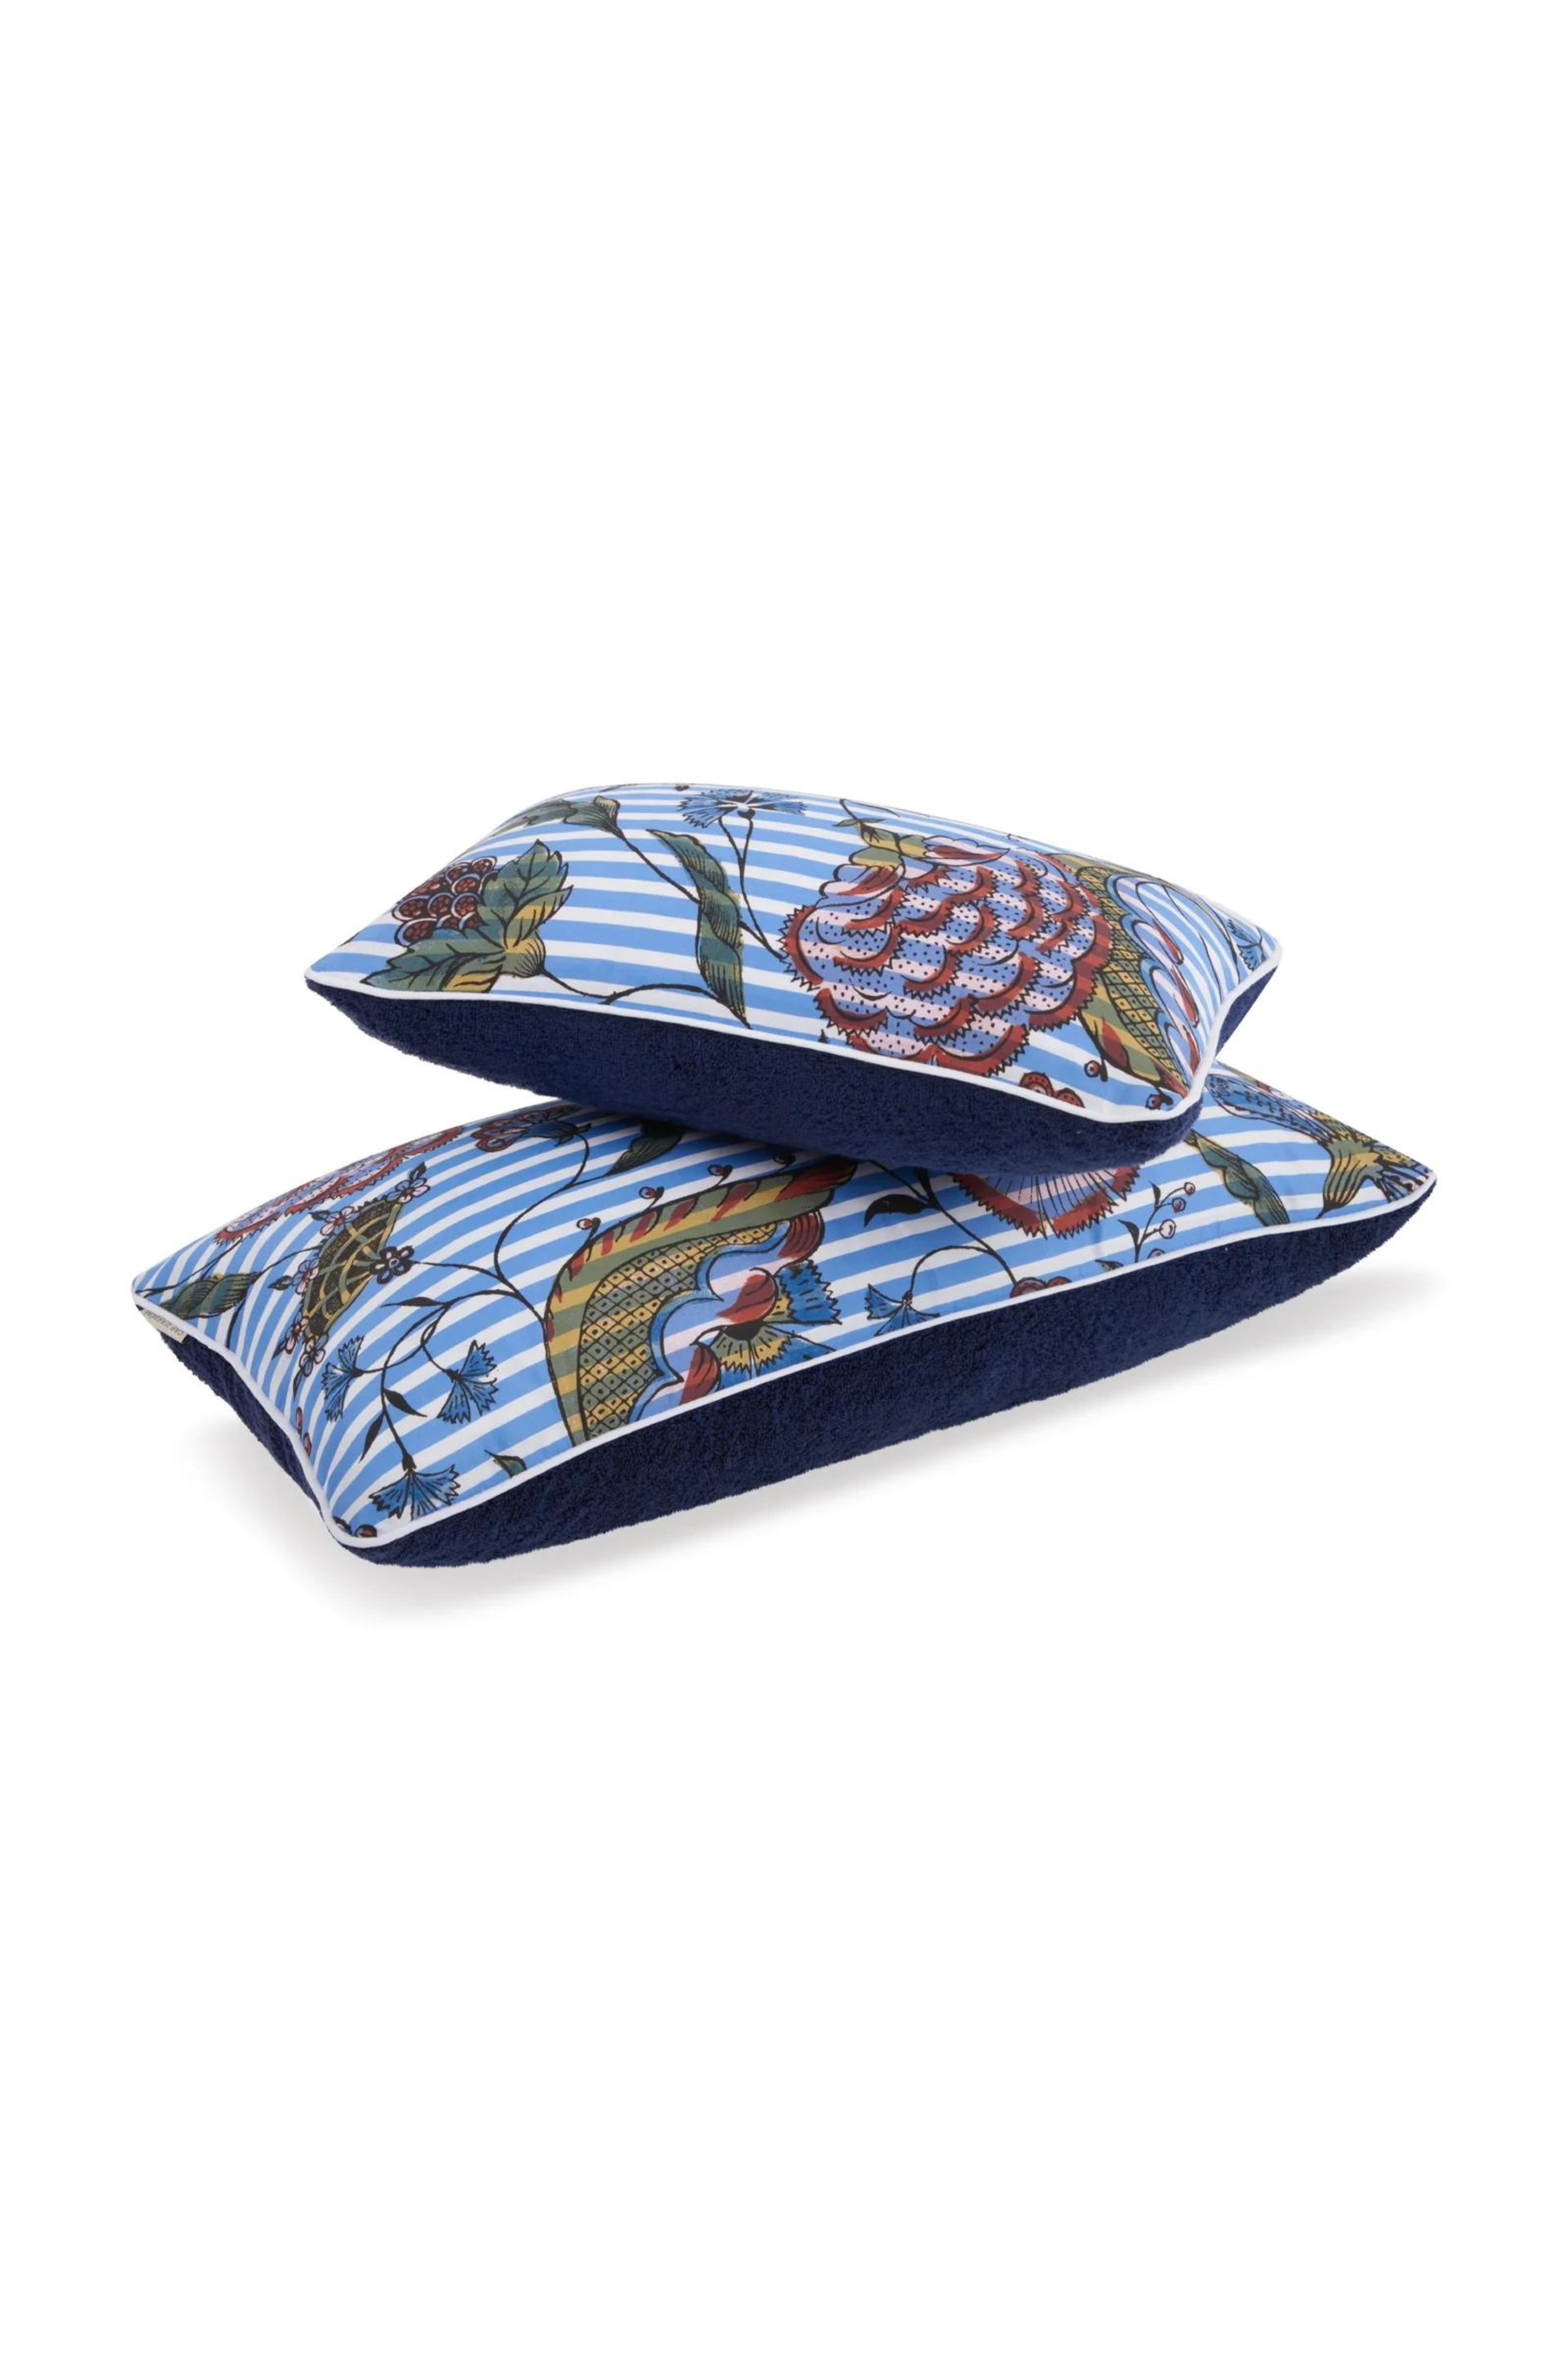 Camarat Striped Blue Antoinette Poisson Pillow